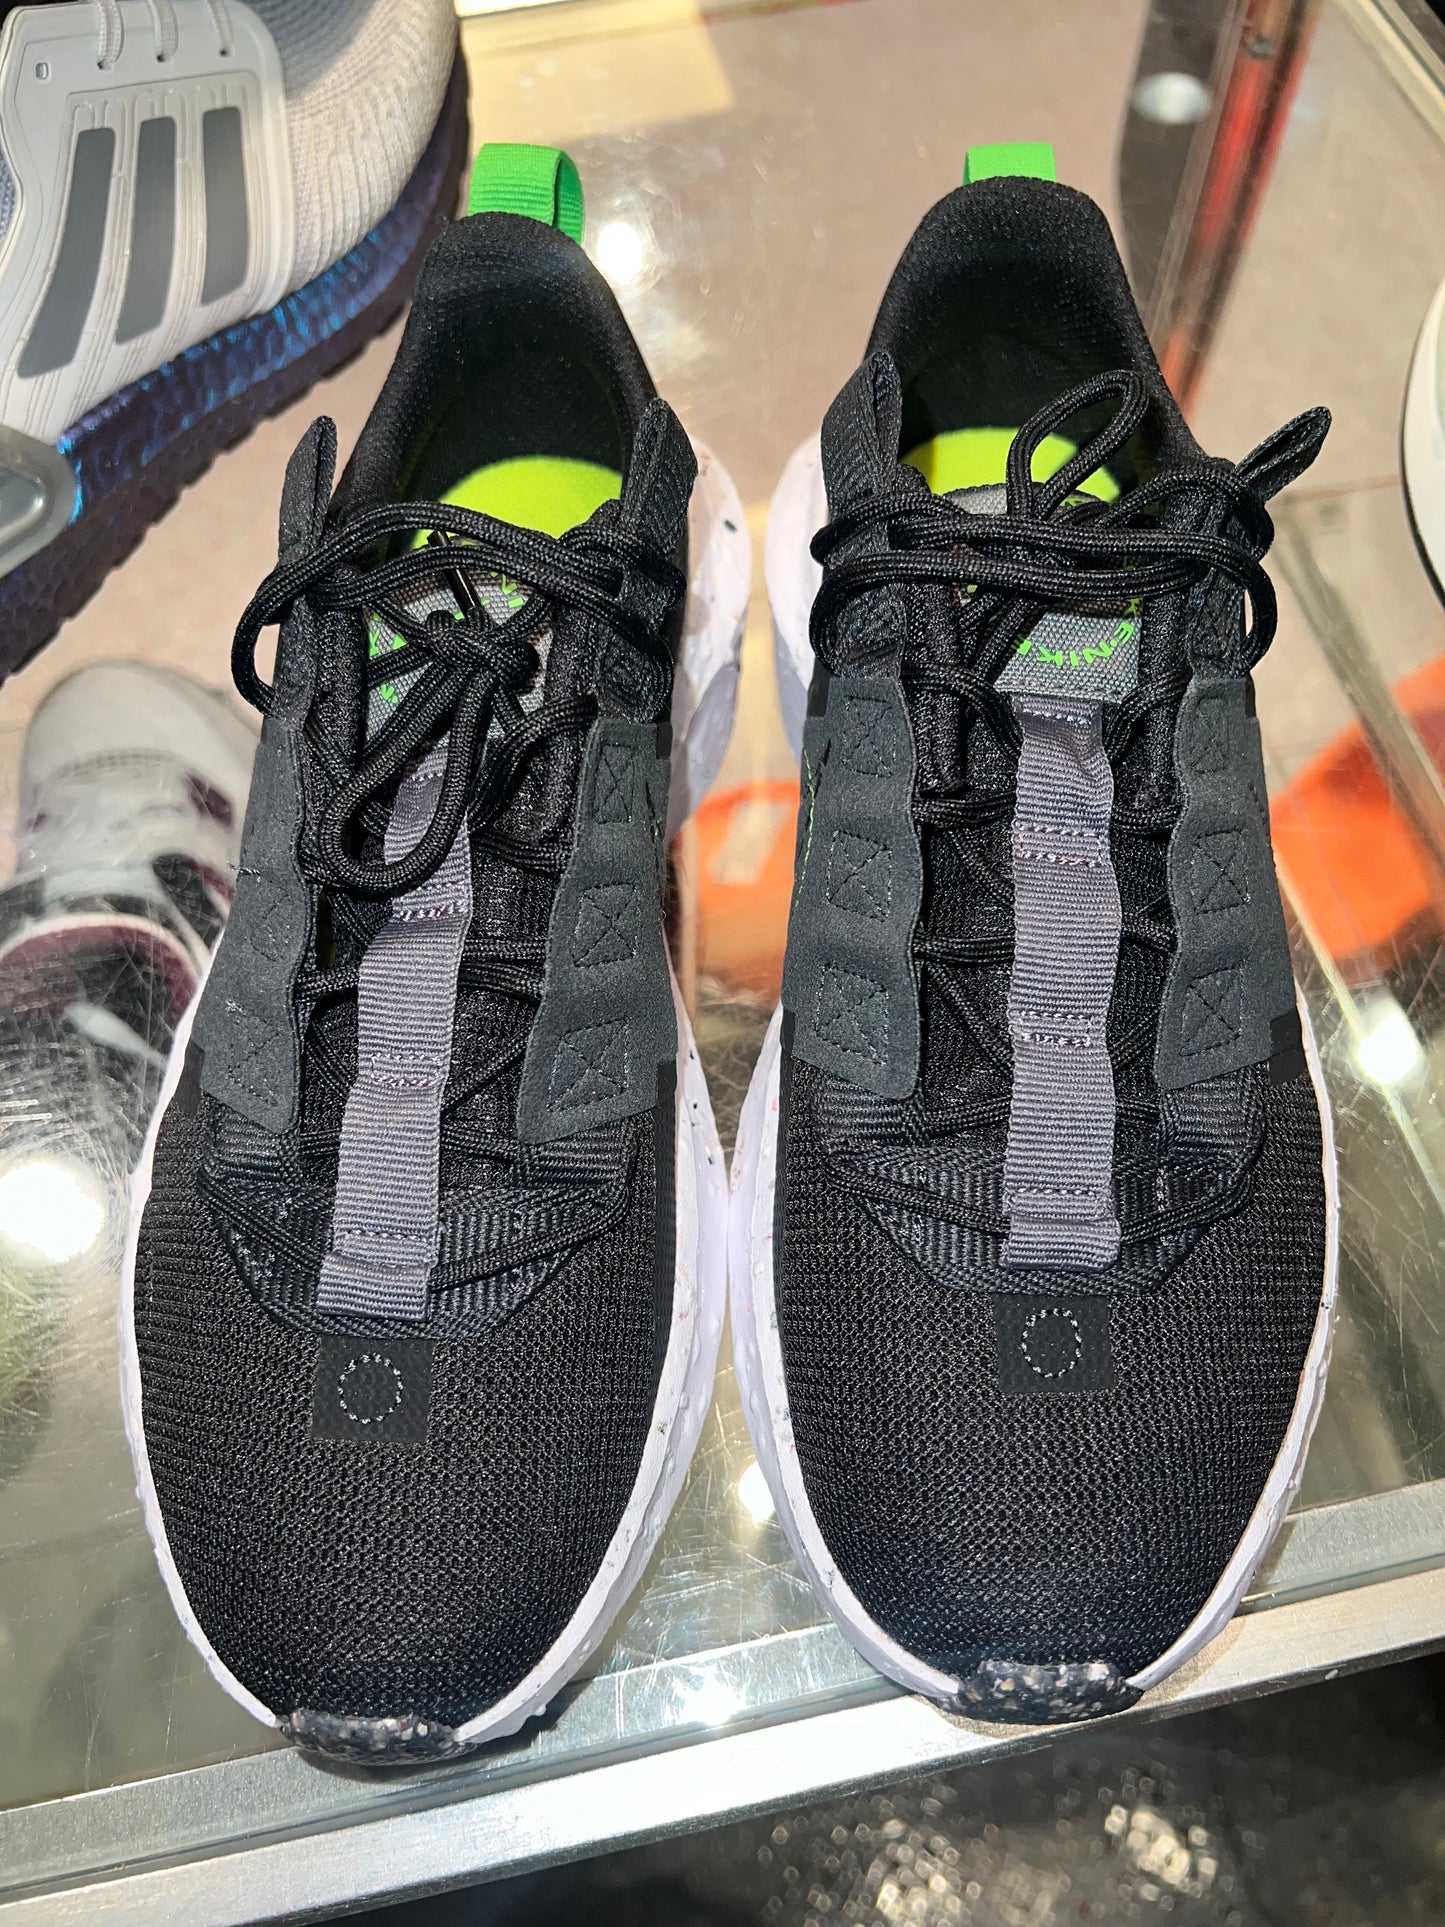 Size 5.5 (7w) Nike Crater Impact “Black Smoke Grey” (Mall)